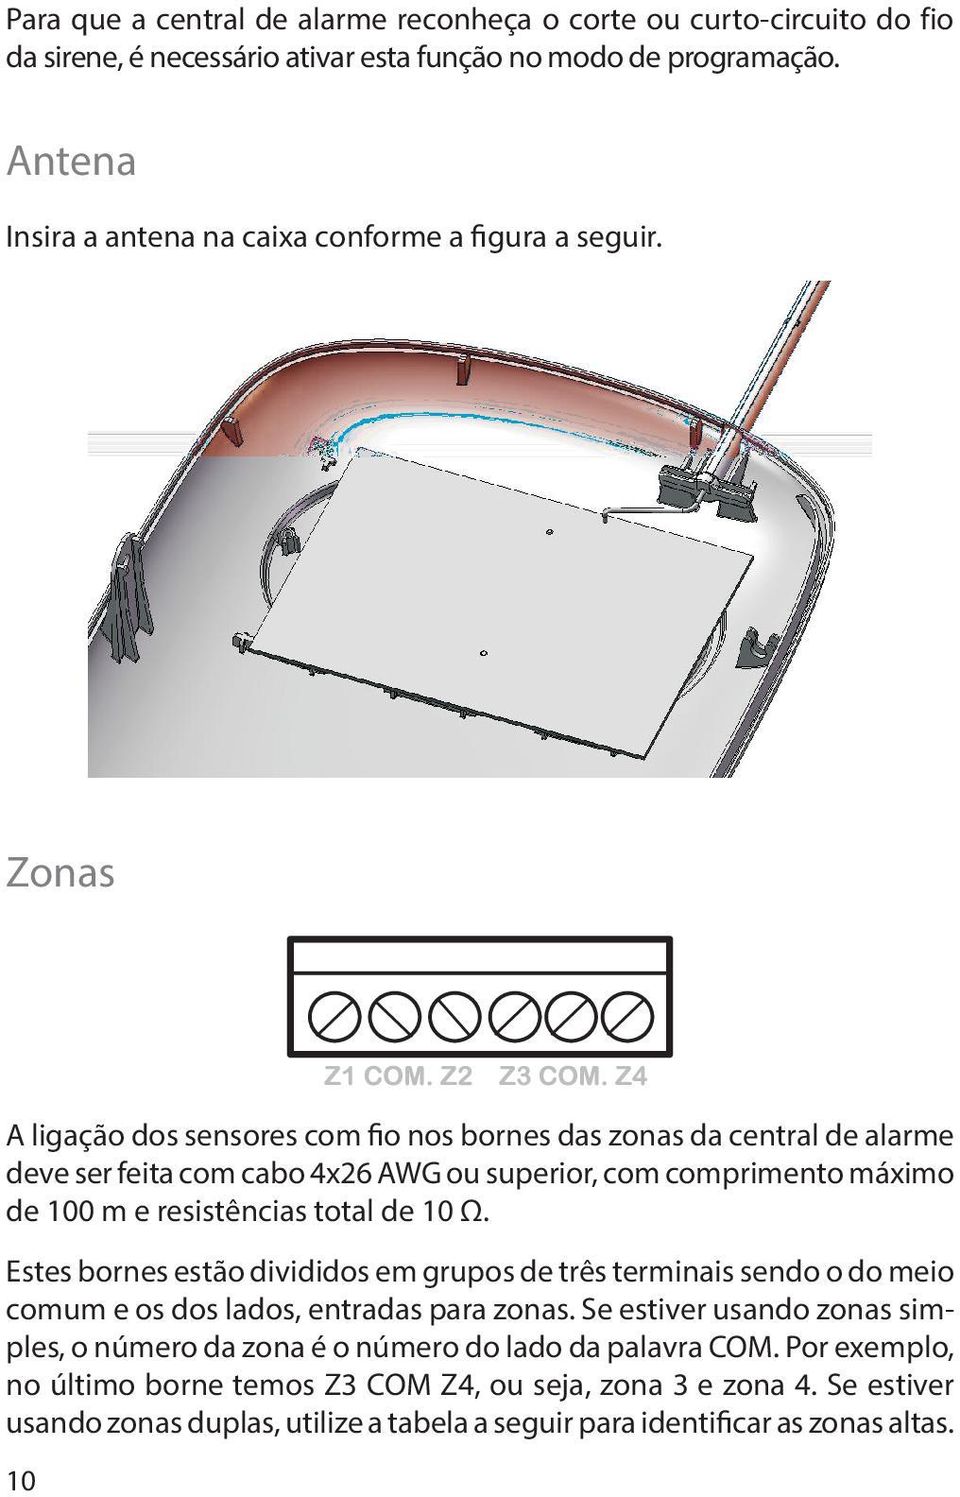 Zonas A ligação dos sensores com fio nos bornes das zonas da central de alarme deve ser feita com cabo 4x26 AWG ou superior, com comprimento máximo de 100 m e resistências total de 10 Ω.